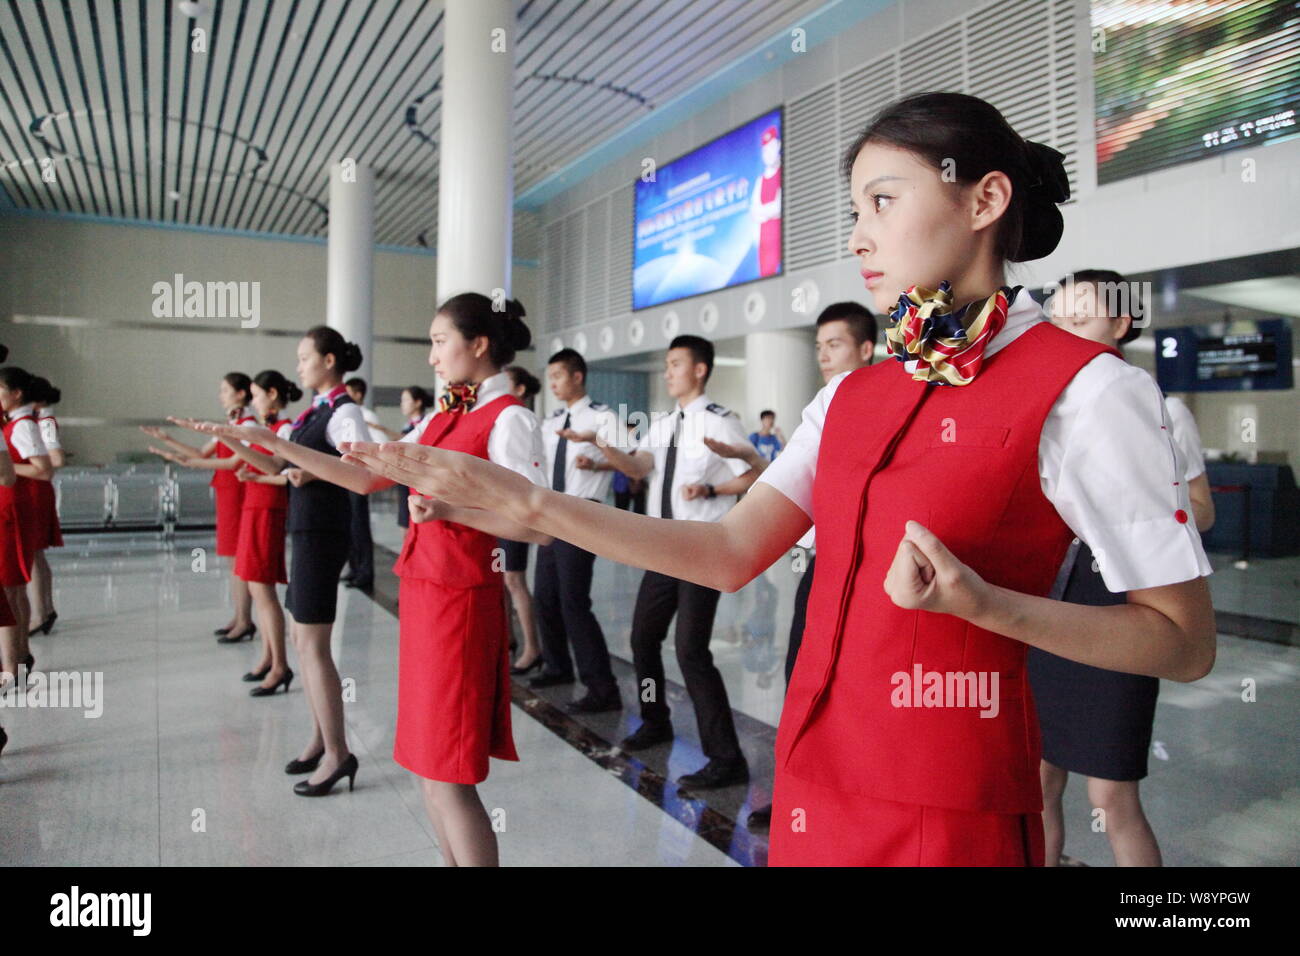 Японская школа стюардесс. Sichuan Airlines стюардессы. Школа стюардесс Китай. Тренировка стюардесс в Китае. Китайские стюардессы.